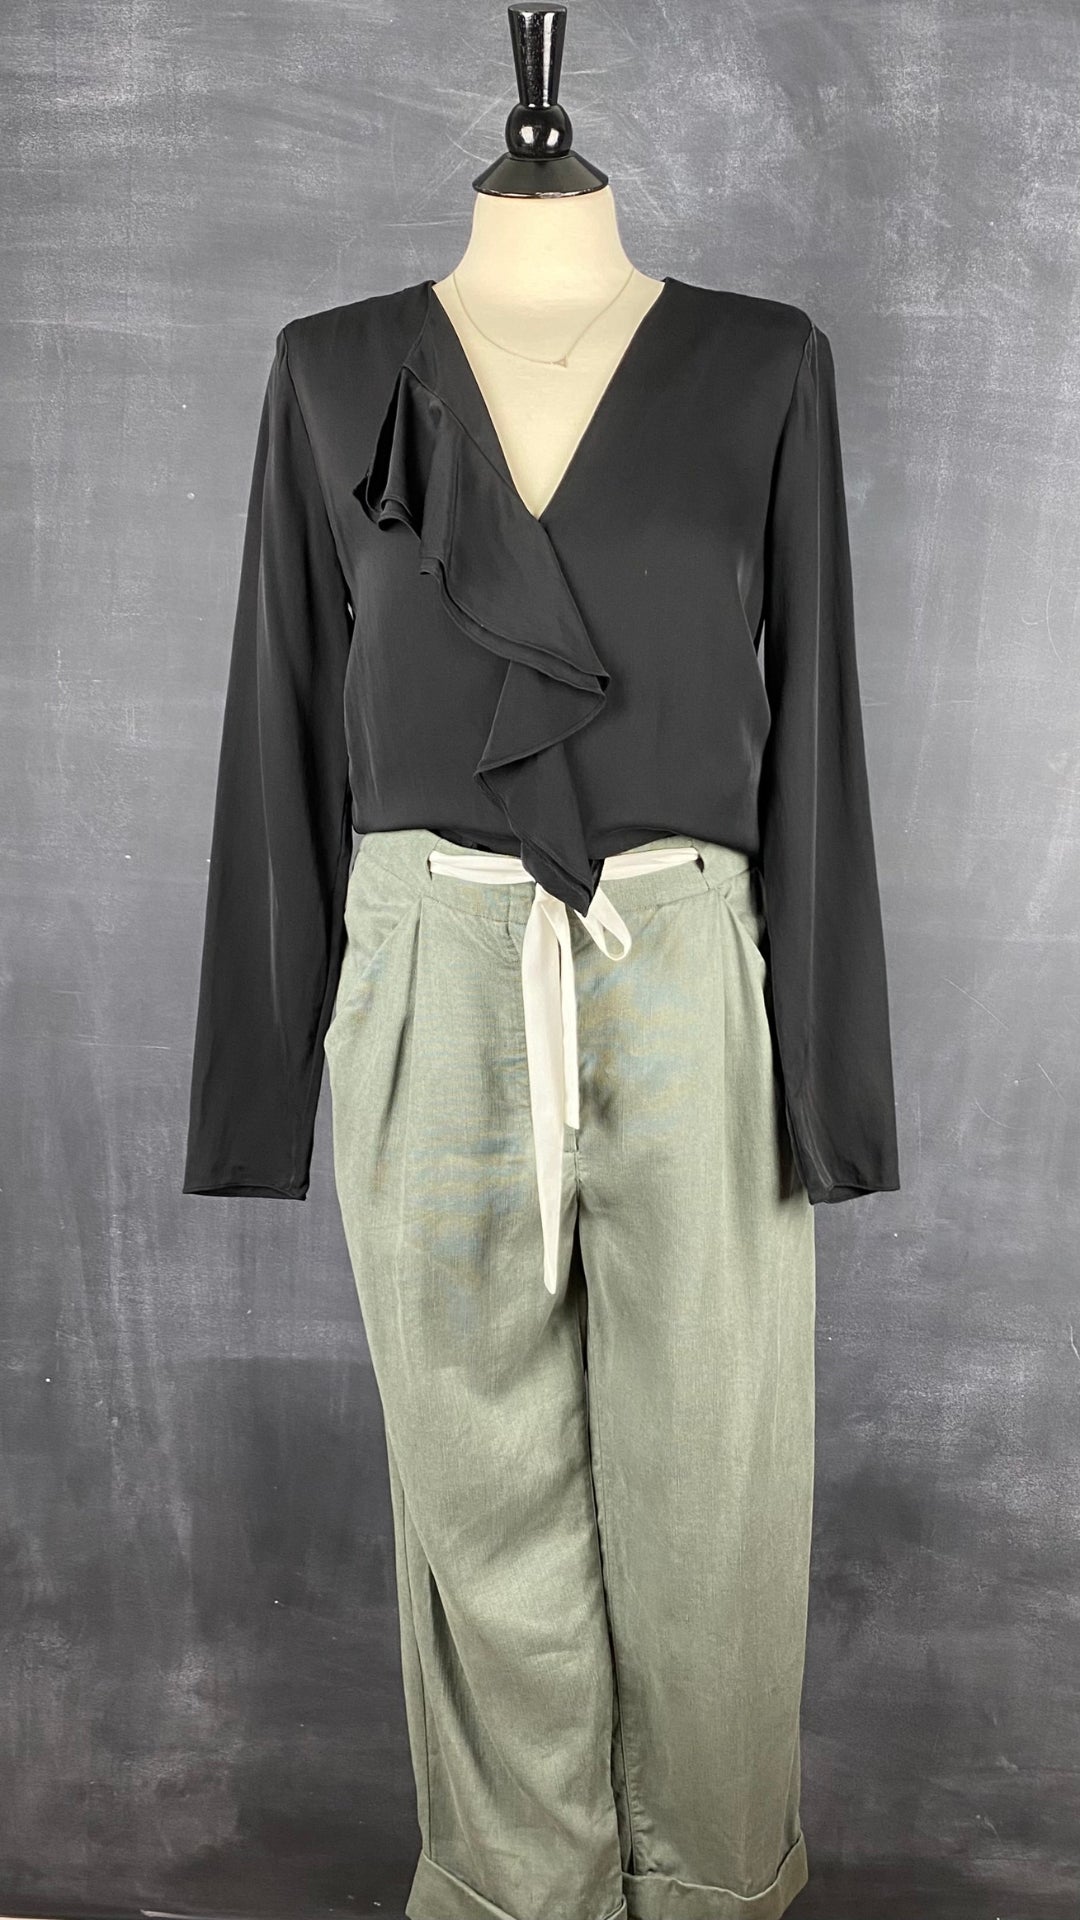 Pantalon vert en lyocell et lin Wilfred, taille 8. Vue de l'agencement avec la blouse noire à volant Theory.